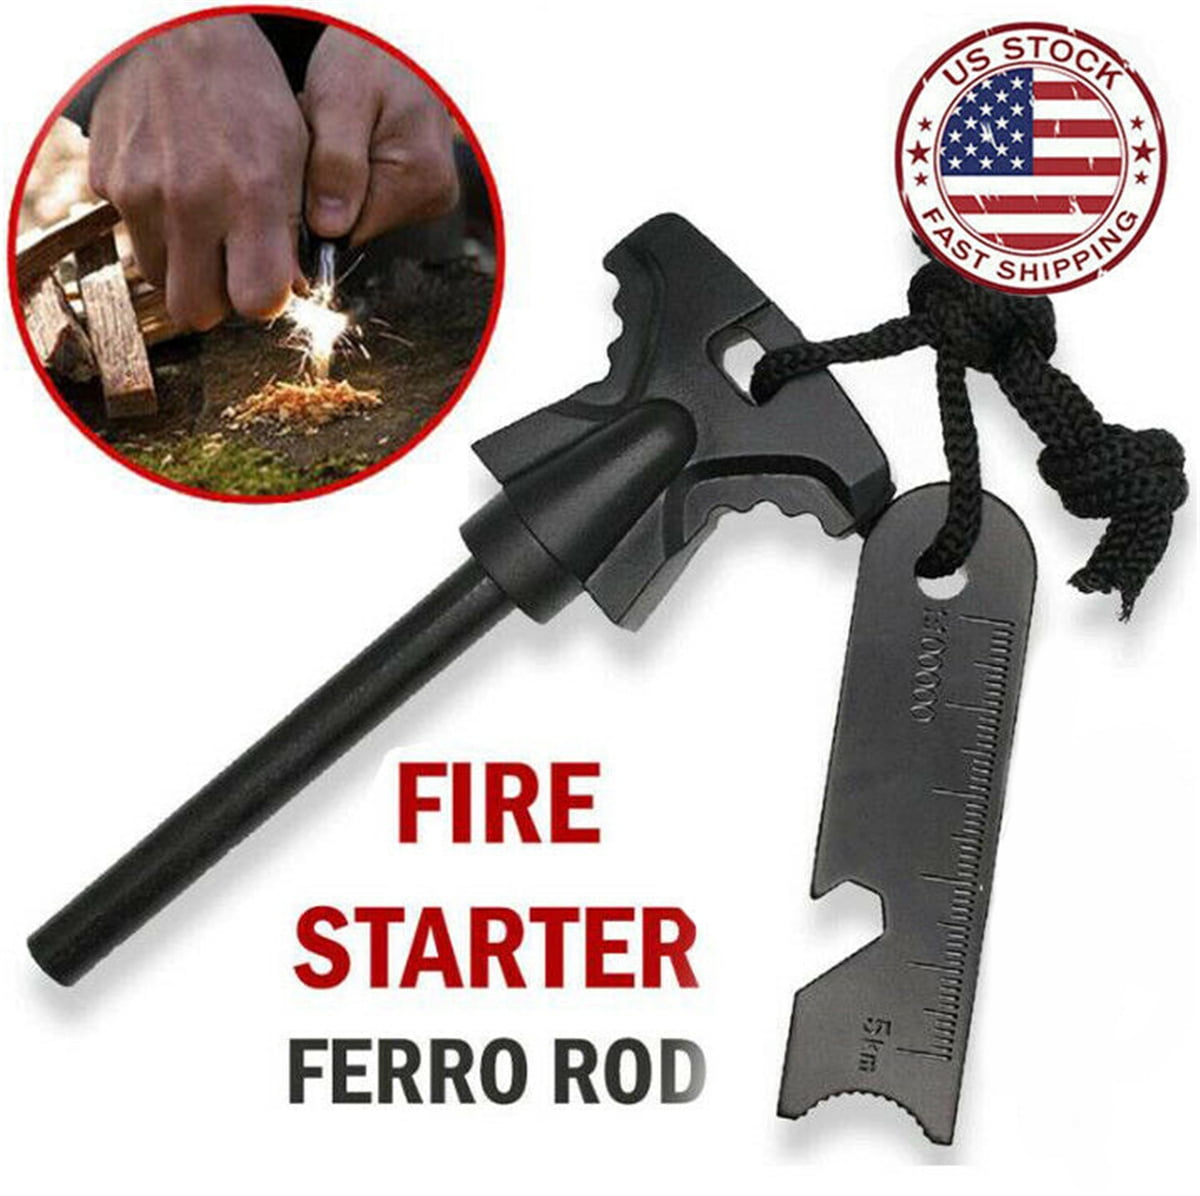 Ferro Rod Fire Starter Survival FireSteel 6x1/2 camo paracord striker scraper 